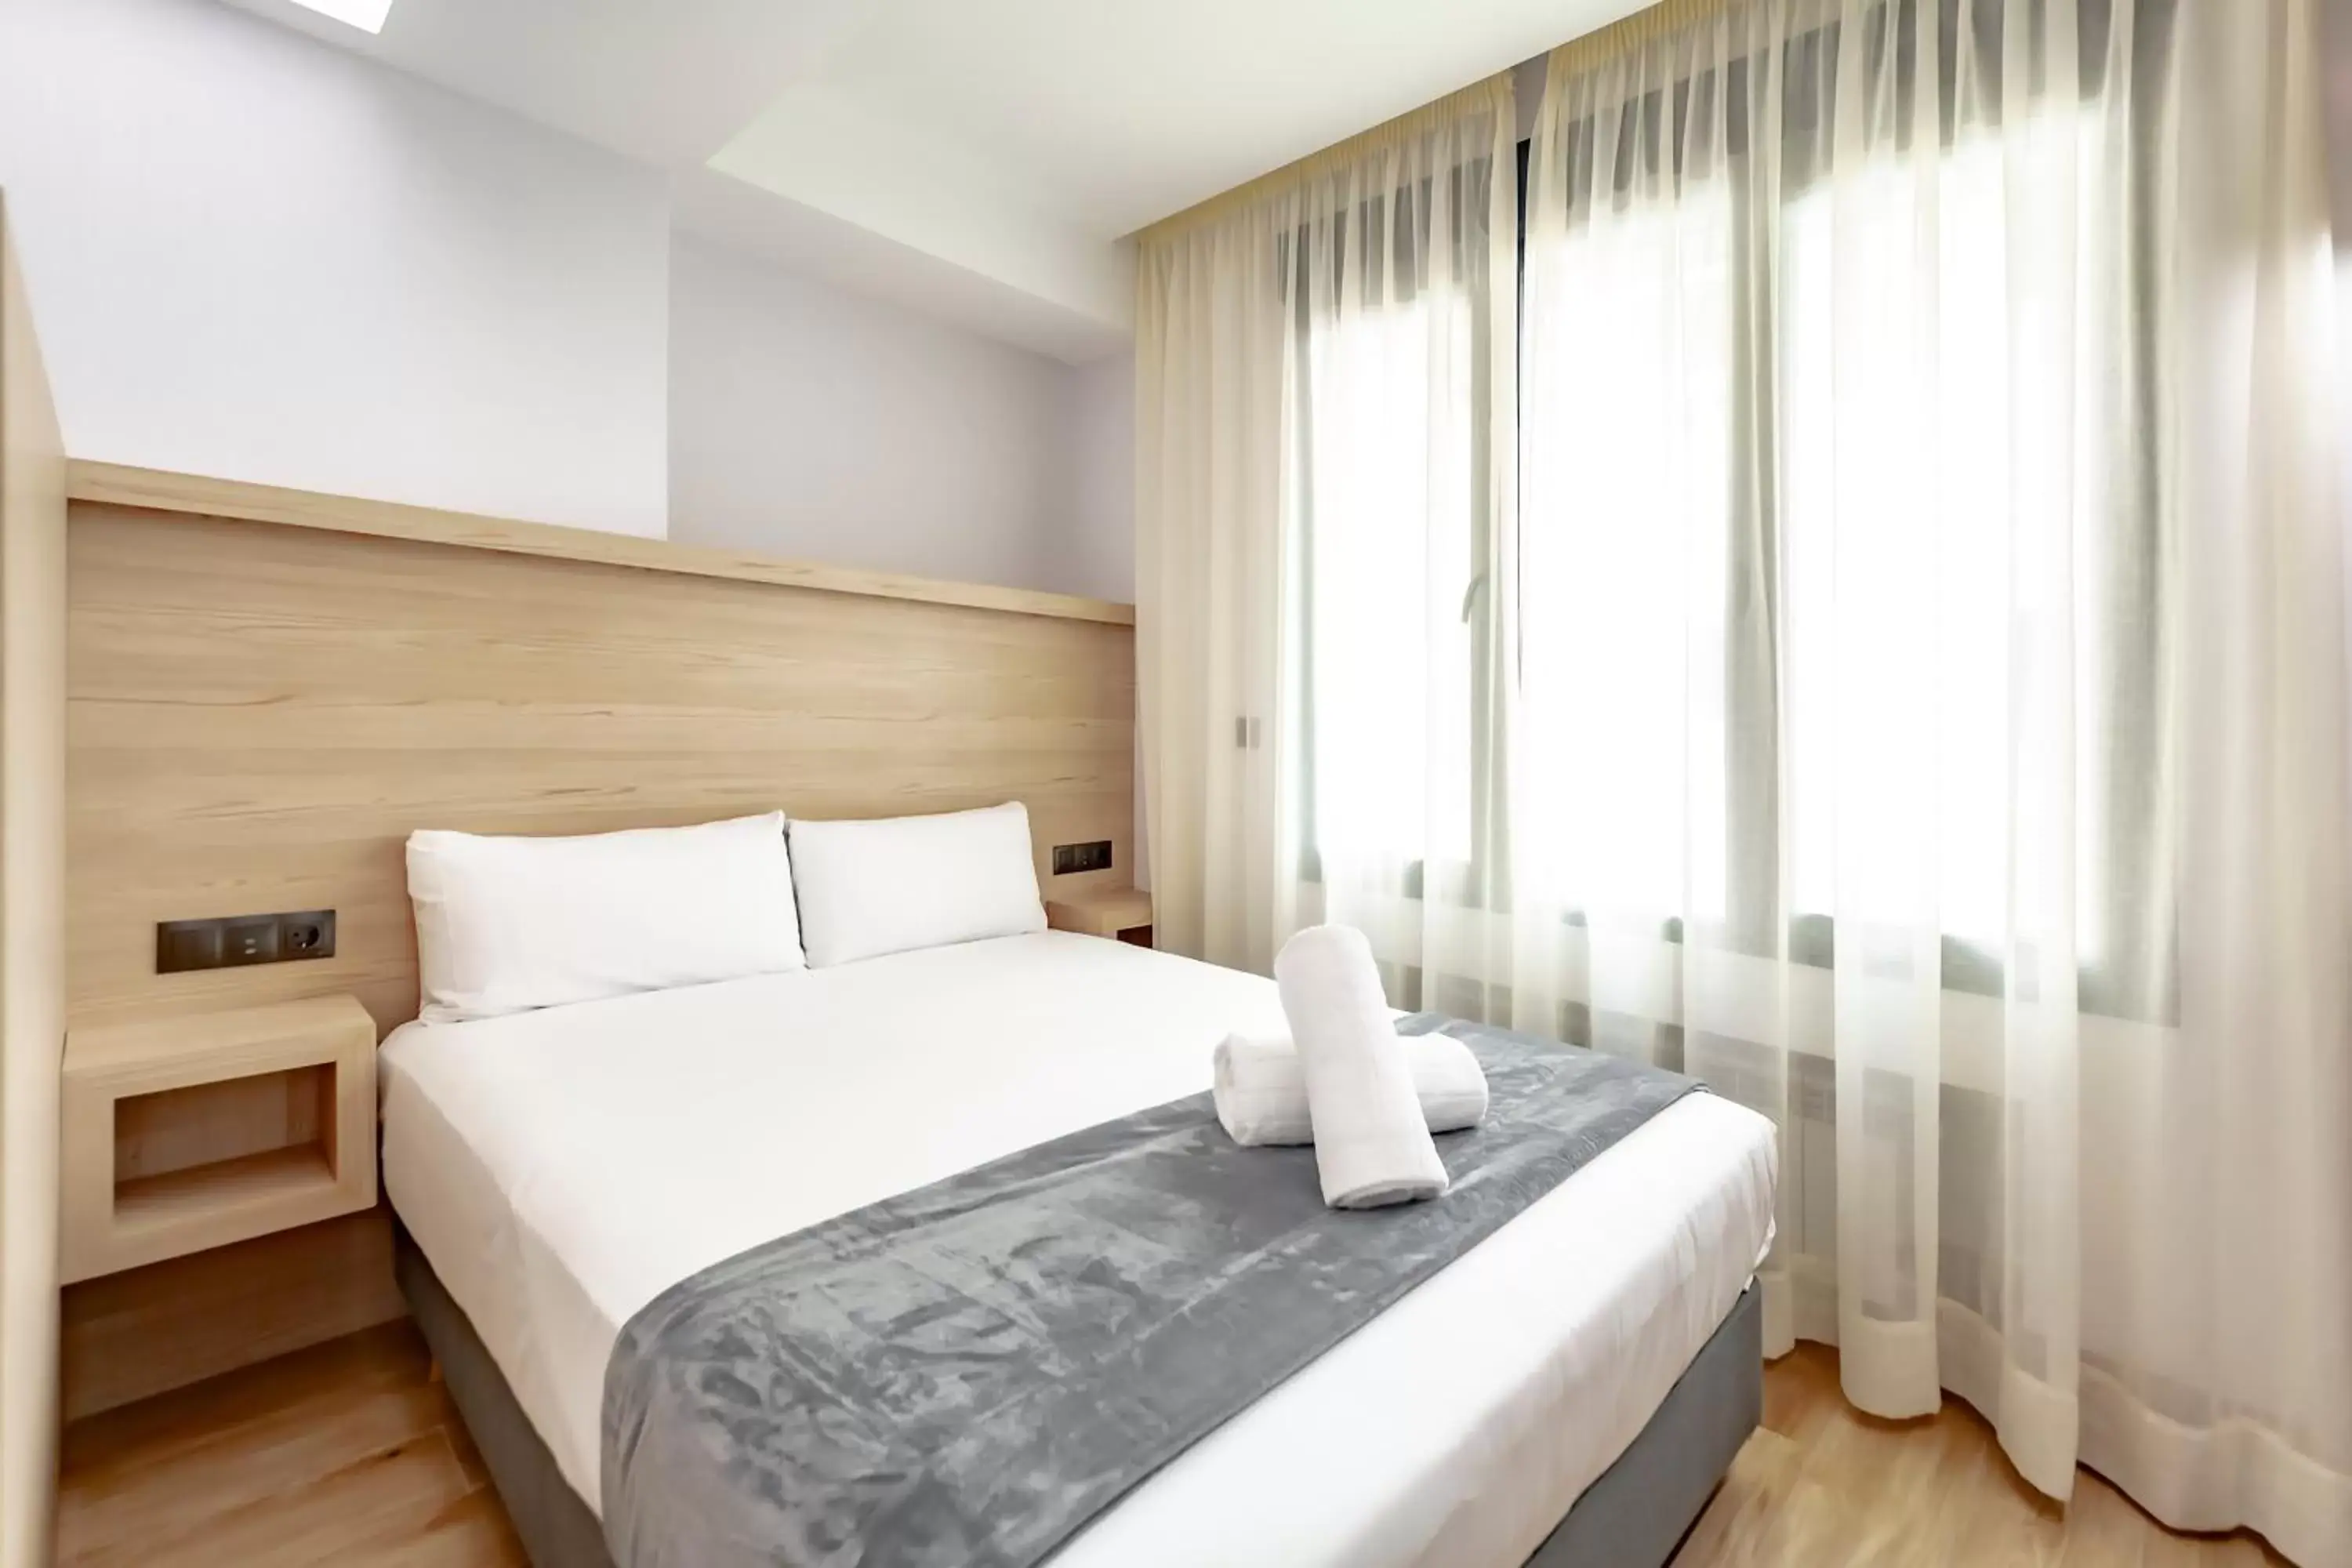 Bed in dobohomes - Montesa 20 Apartamentos